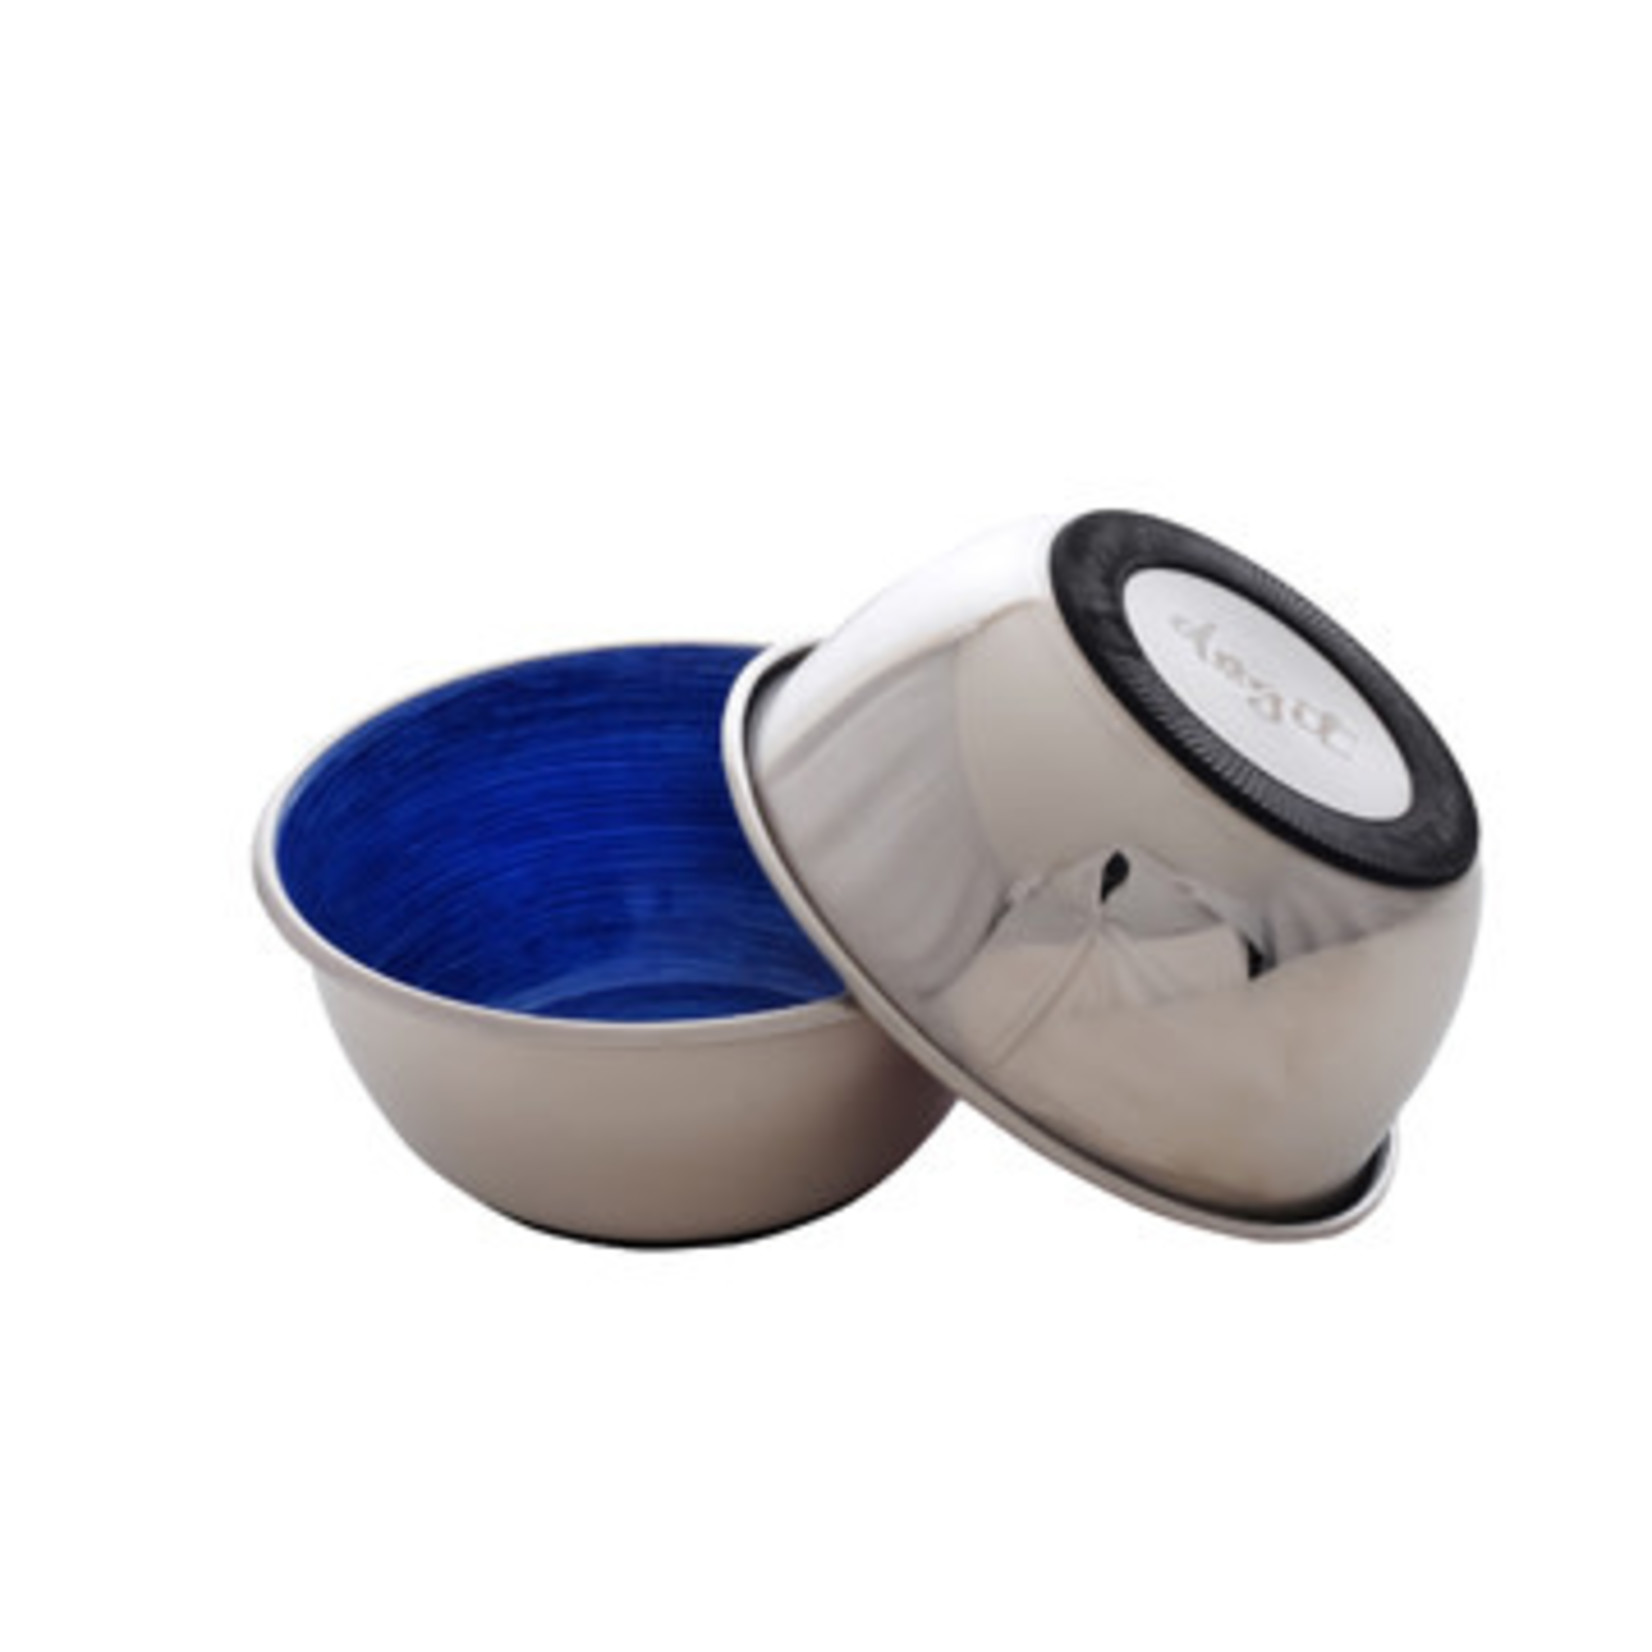 DogIt Dogit Stainless Steel Non-Skid Dog Bowl - Blue Swirl - 500 ml (17 fl.oz.)